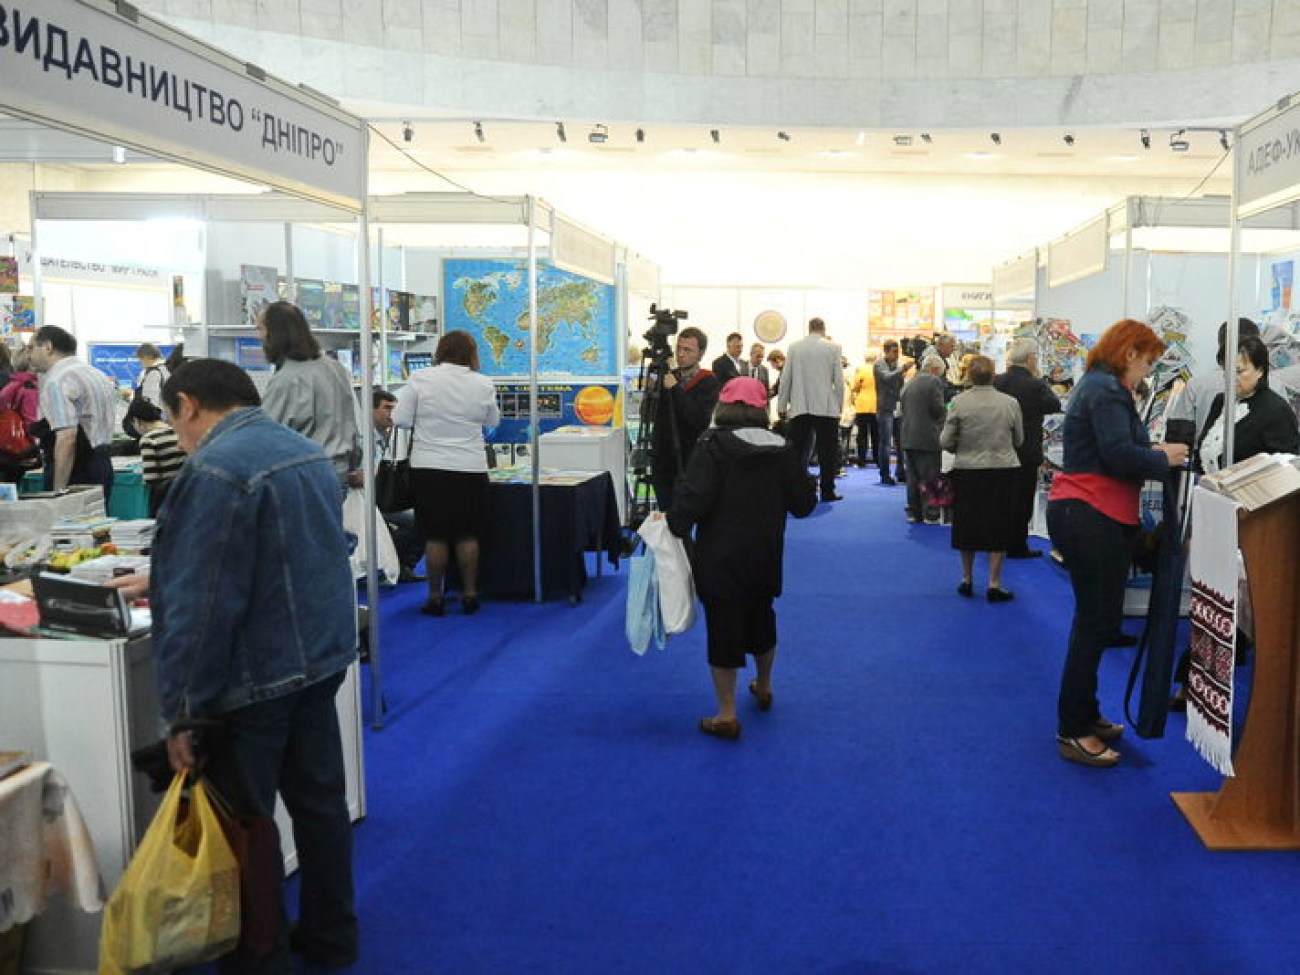 В Киеве открылась Книжная выставка-ярмарка, 29 августа 2013г.